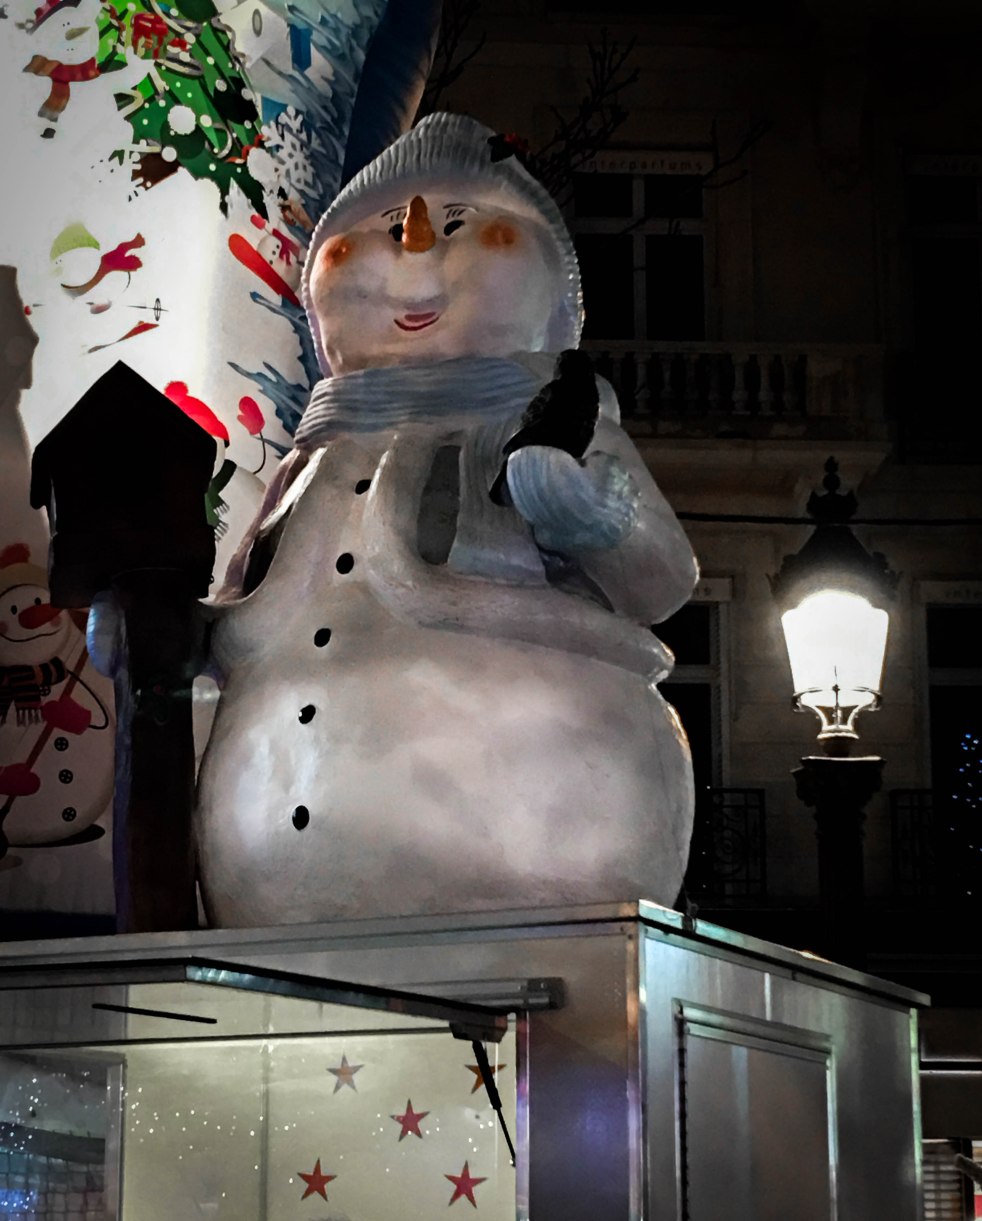 champs-elysees-paris-christmas-snowman